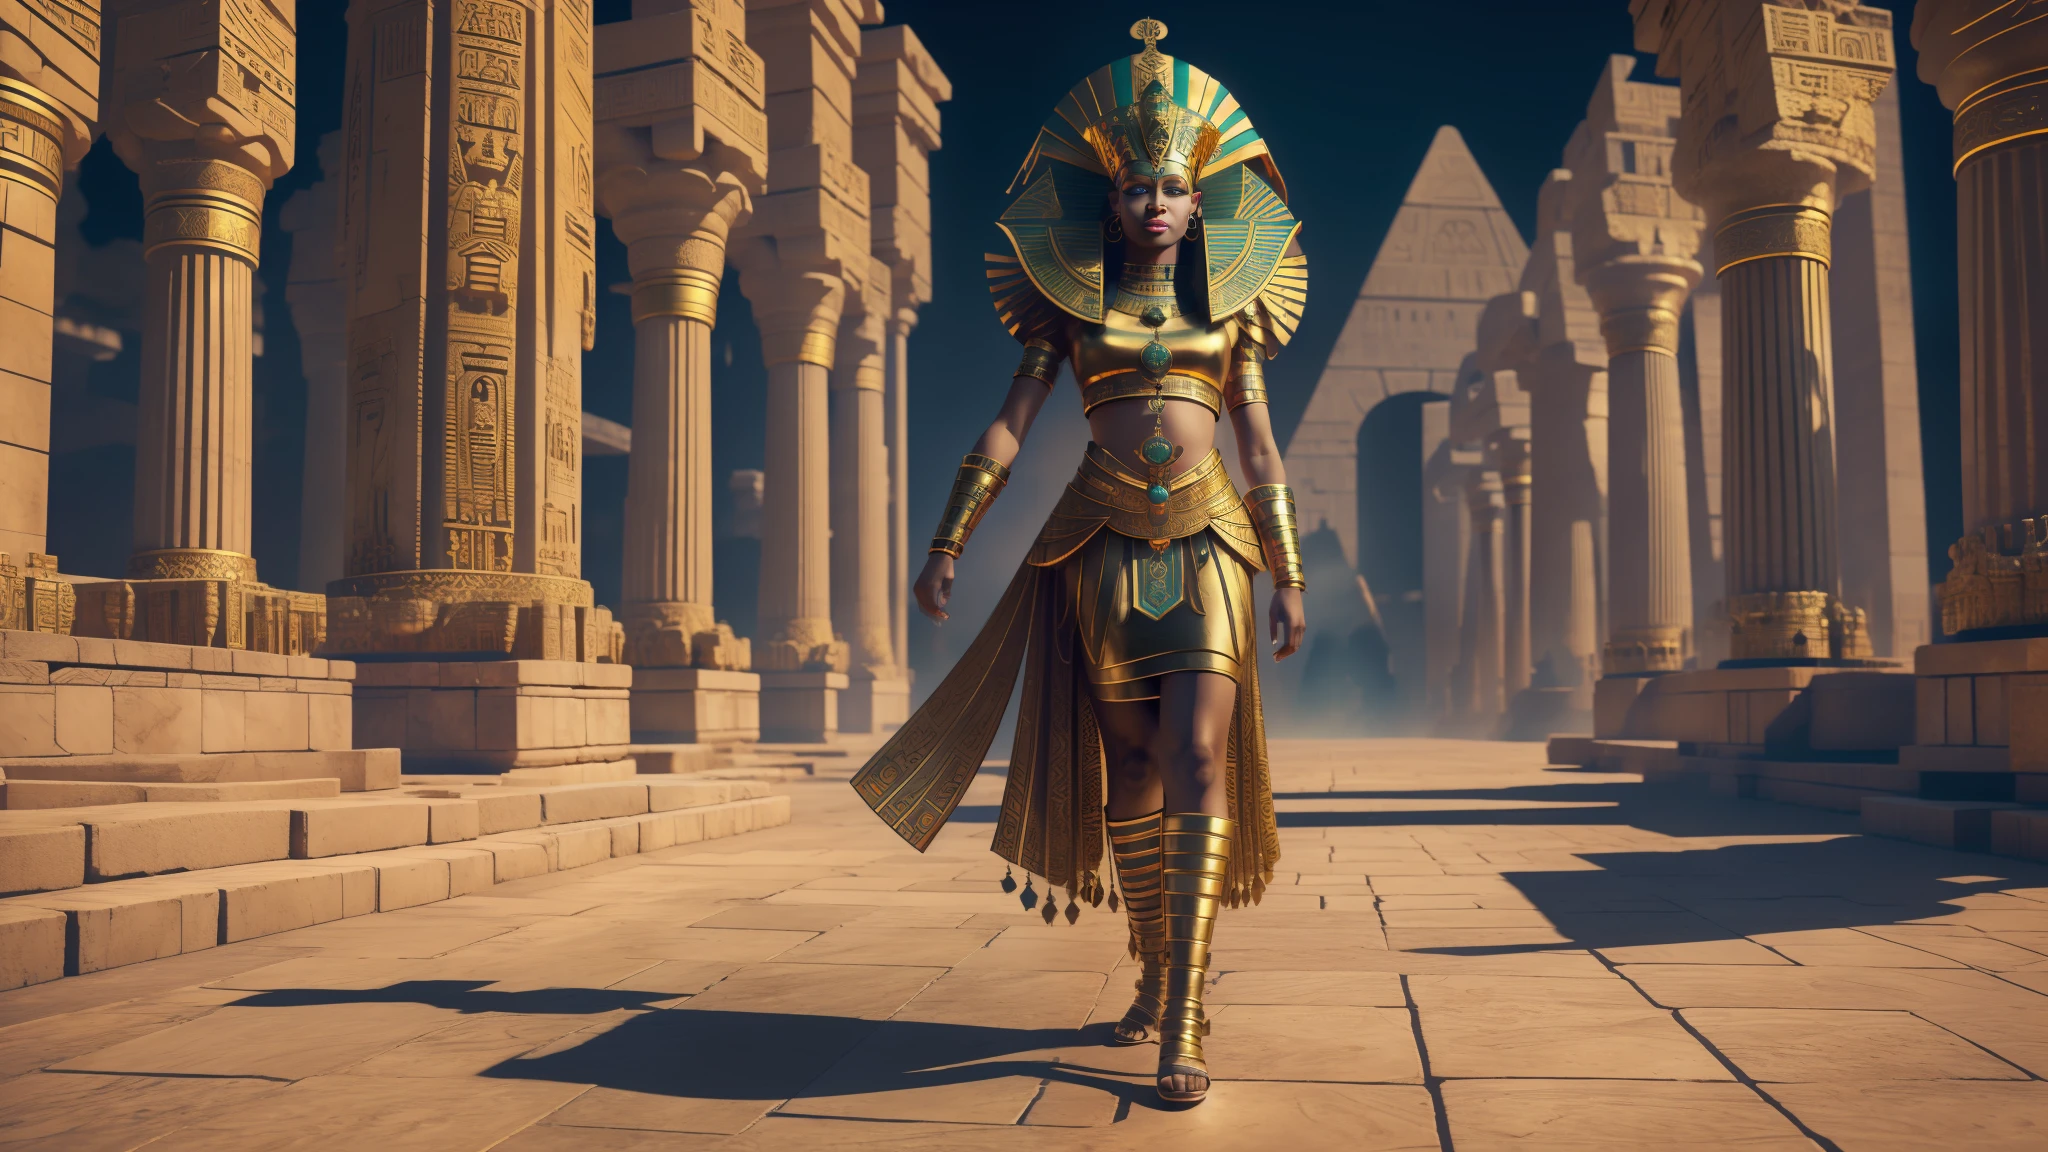 Reina afro cleopatra y corona egipcia, con el fondo del imperio egic, varios dioses egicipianos caminando detrás, Intrincado, habitación, onda luminosa, tiro de cuerpo completo, modelado 3D, Desenfoque de movimiento, hoja de sprites, colores autocromos, núcleo médico, iluminación dividida, 8 bits --auto --s2